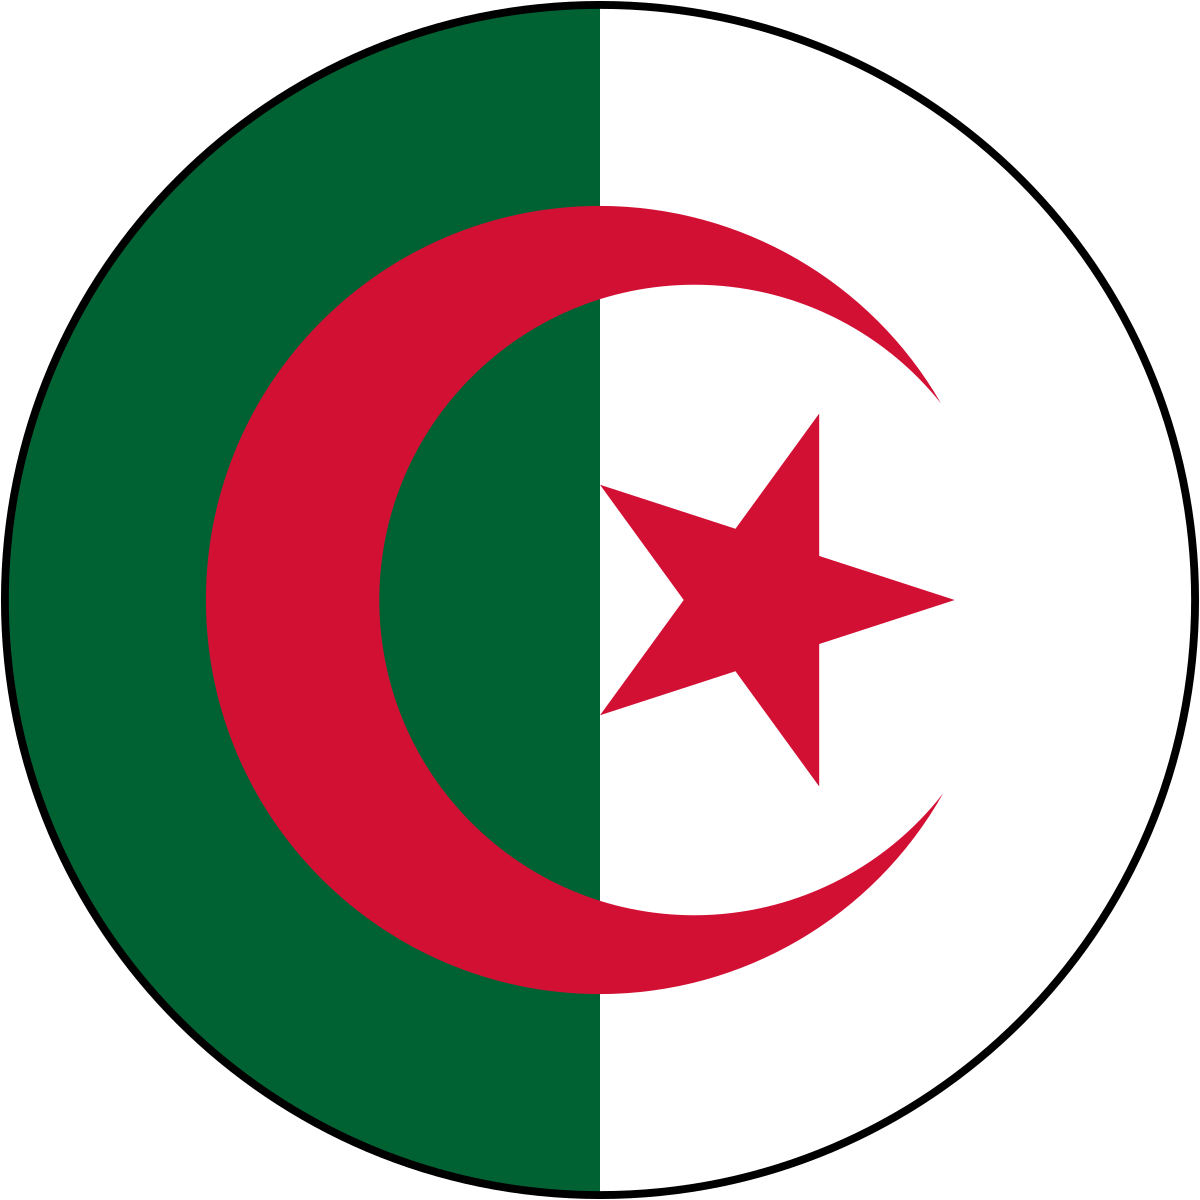 علم الجزائر